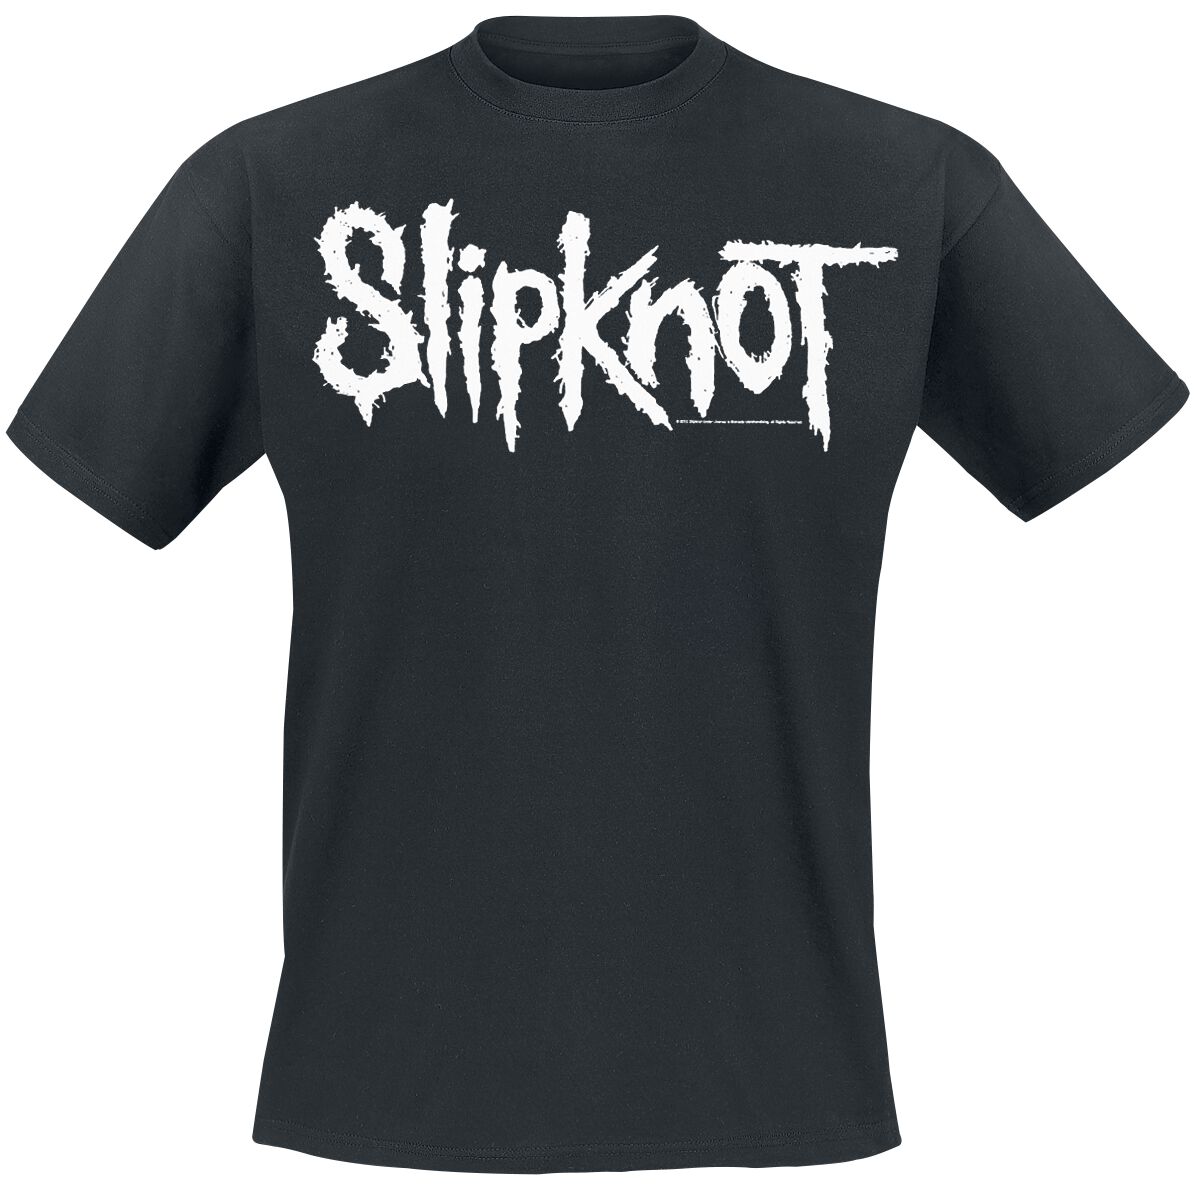 Slipknot T-Shirt - White Logo - S bis 5XL - für Männer - Größe 3XL - schwarz  - EMP exklusives Merchandise!